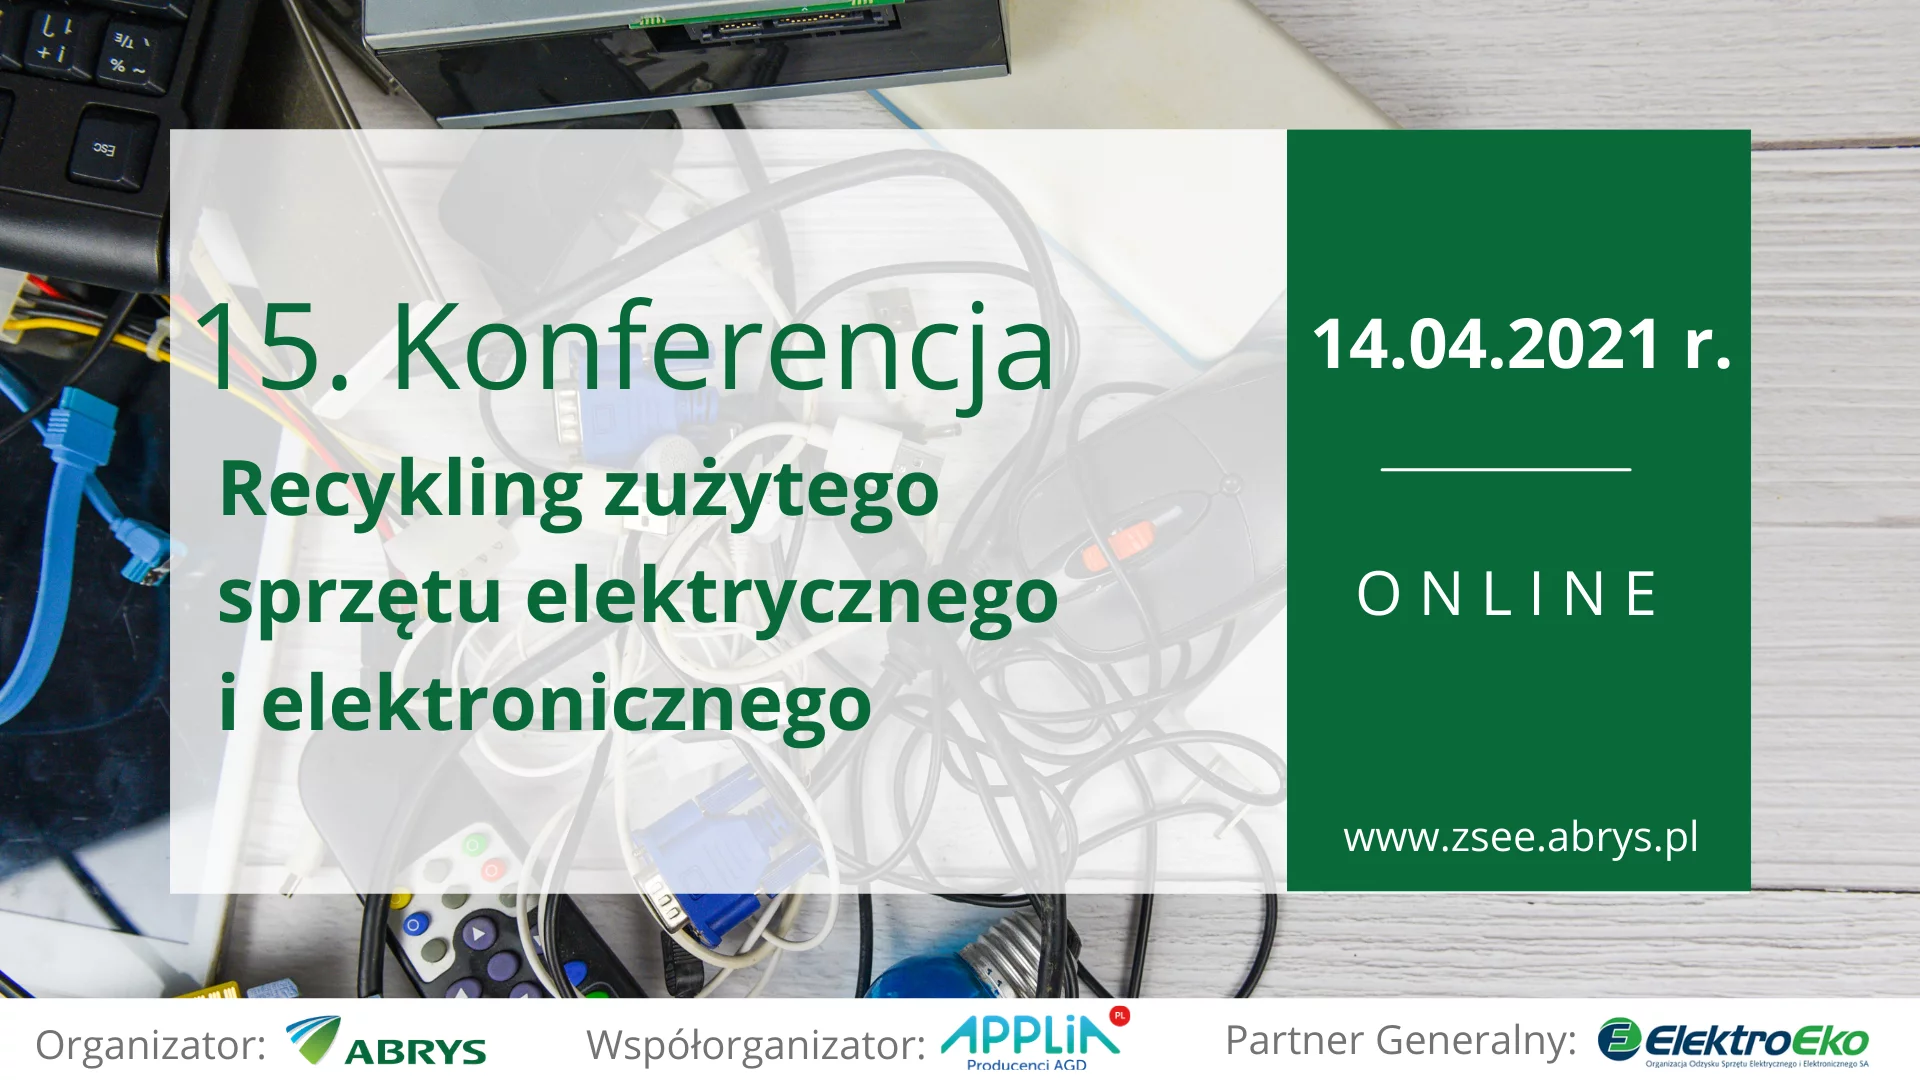 15. Konferencja "Recykling zużytego sprzętu elektrycznego i elektronicznego"